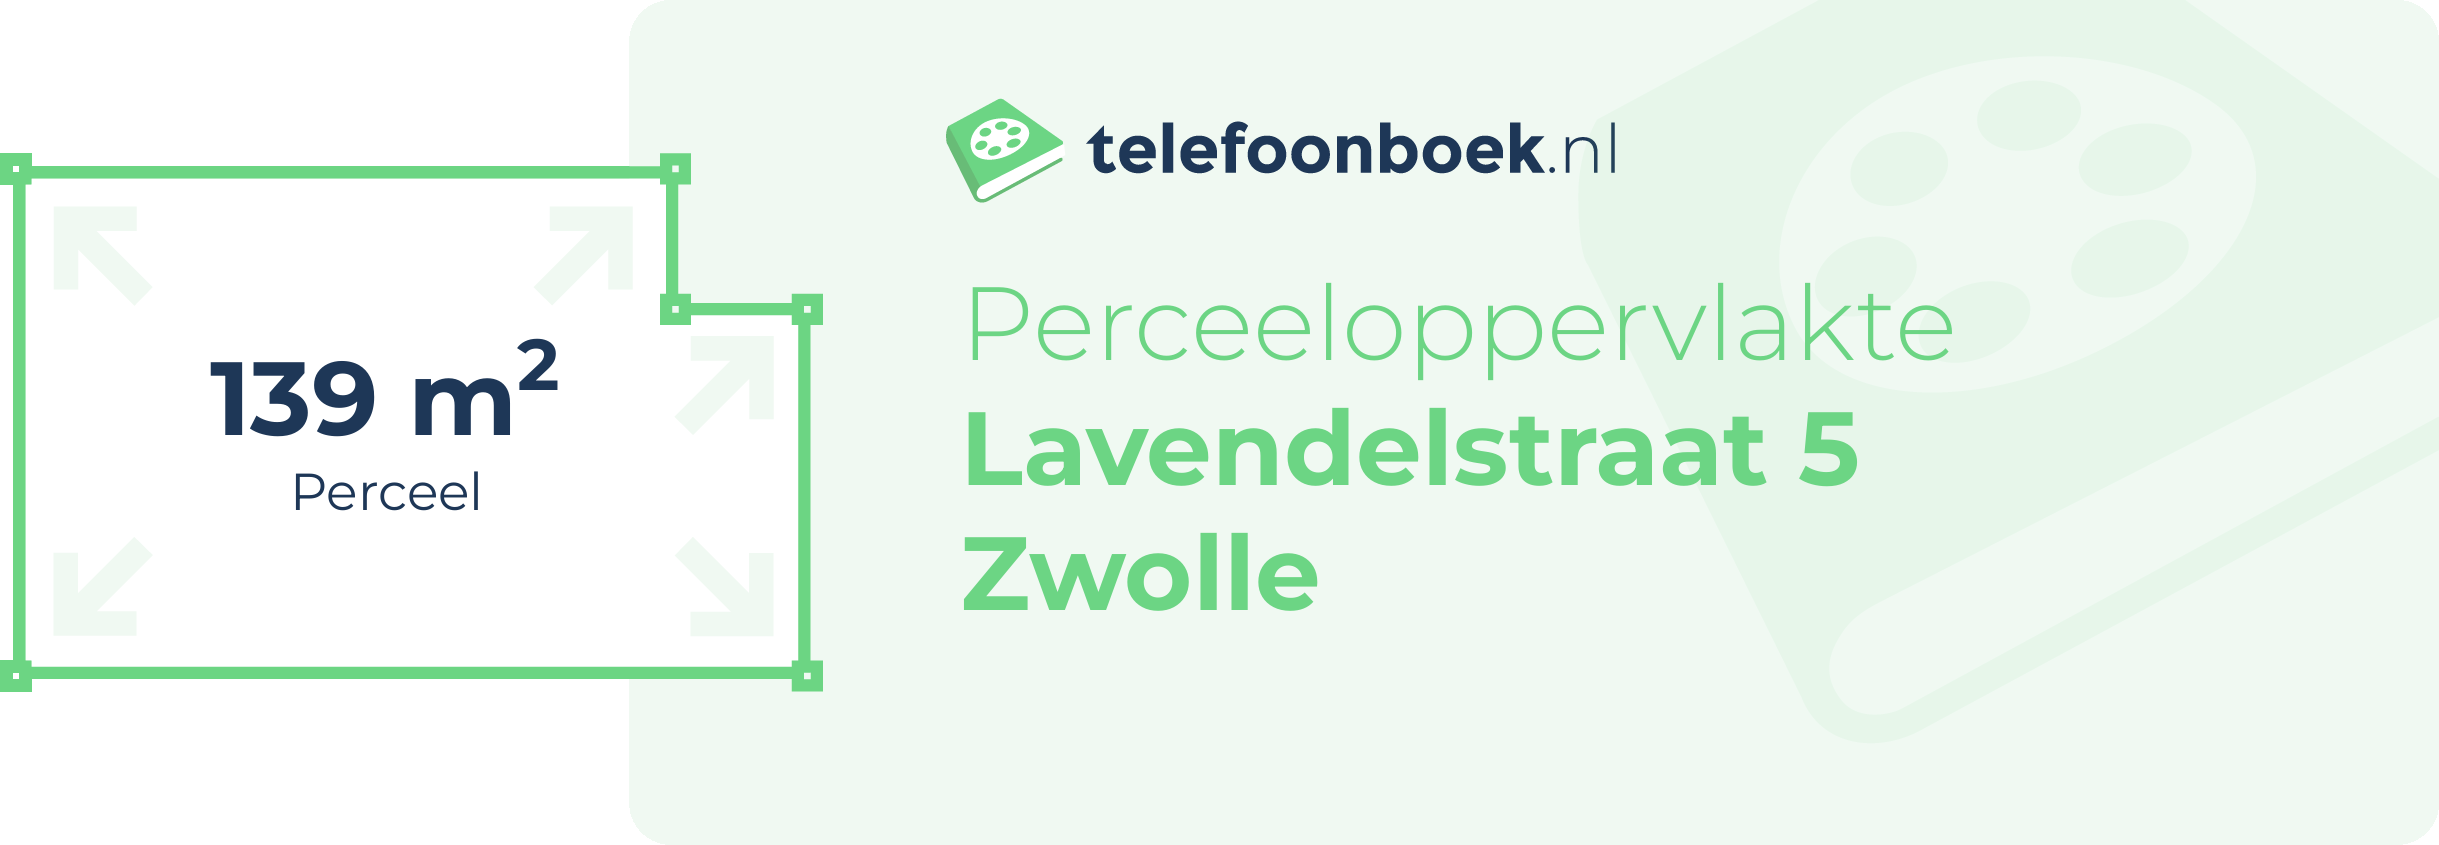 Perceeloppervlakte Lavendelstraat 5 Zwolle